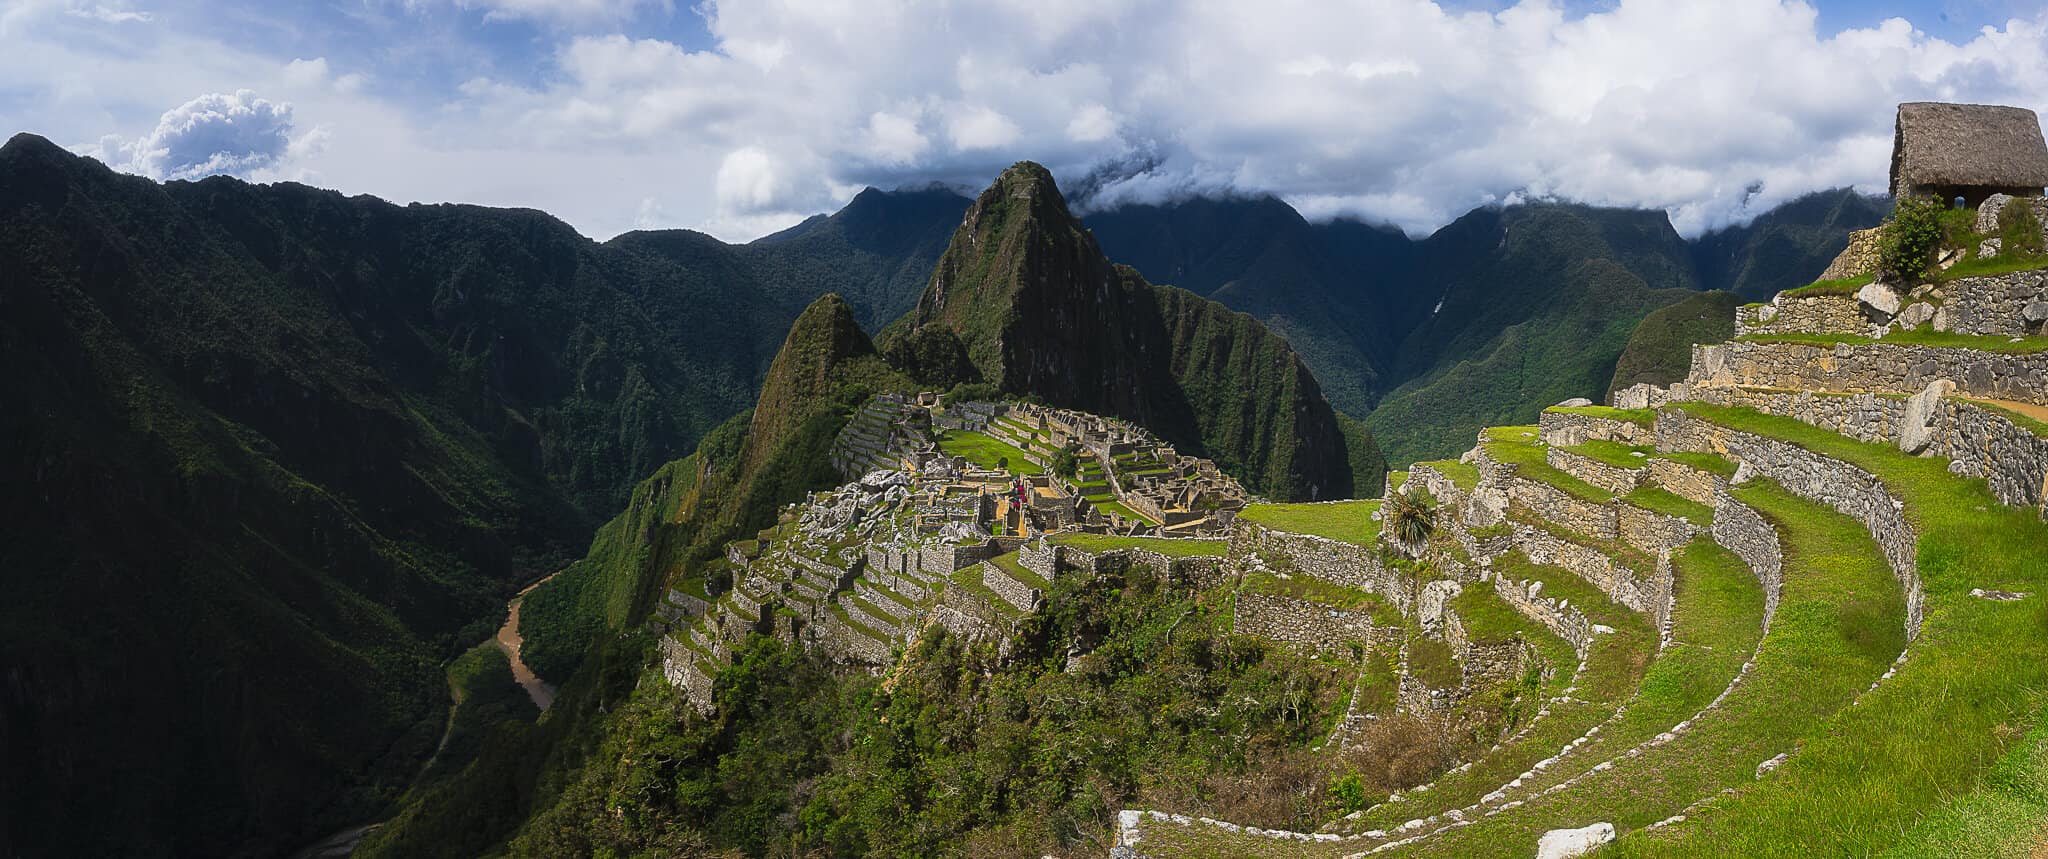 A wide view of Machu Picchu